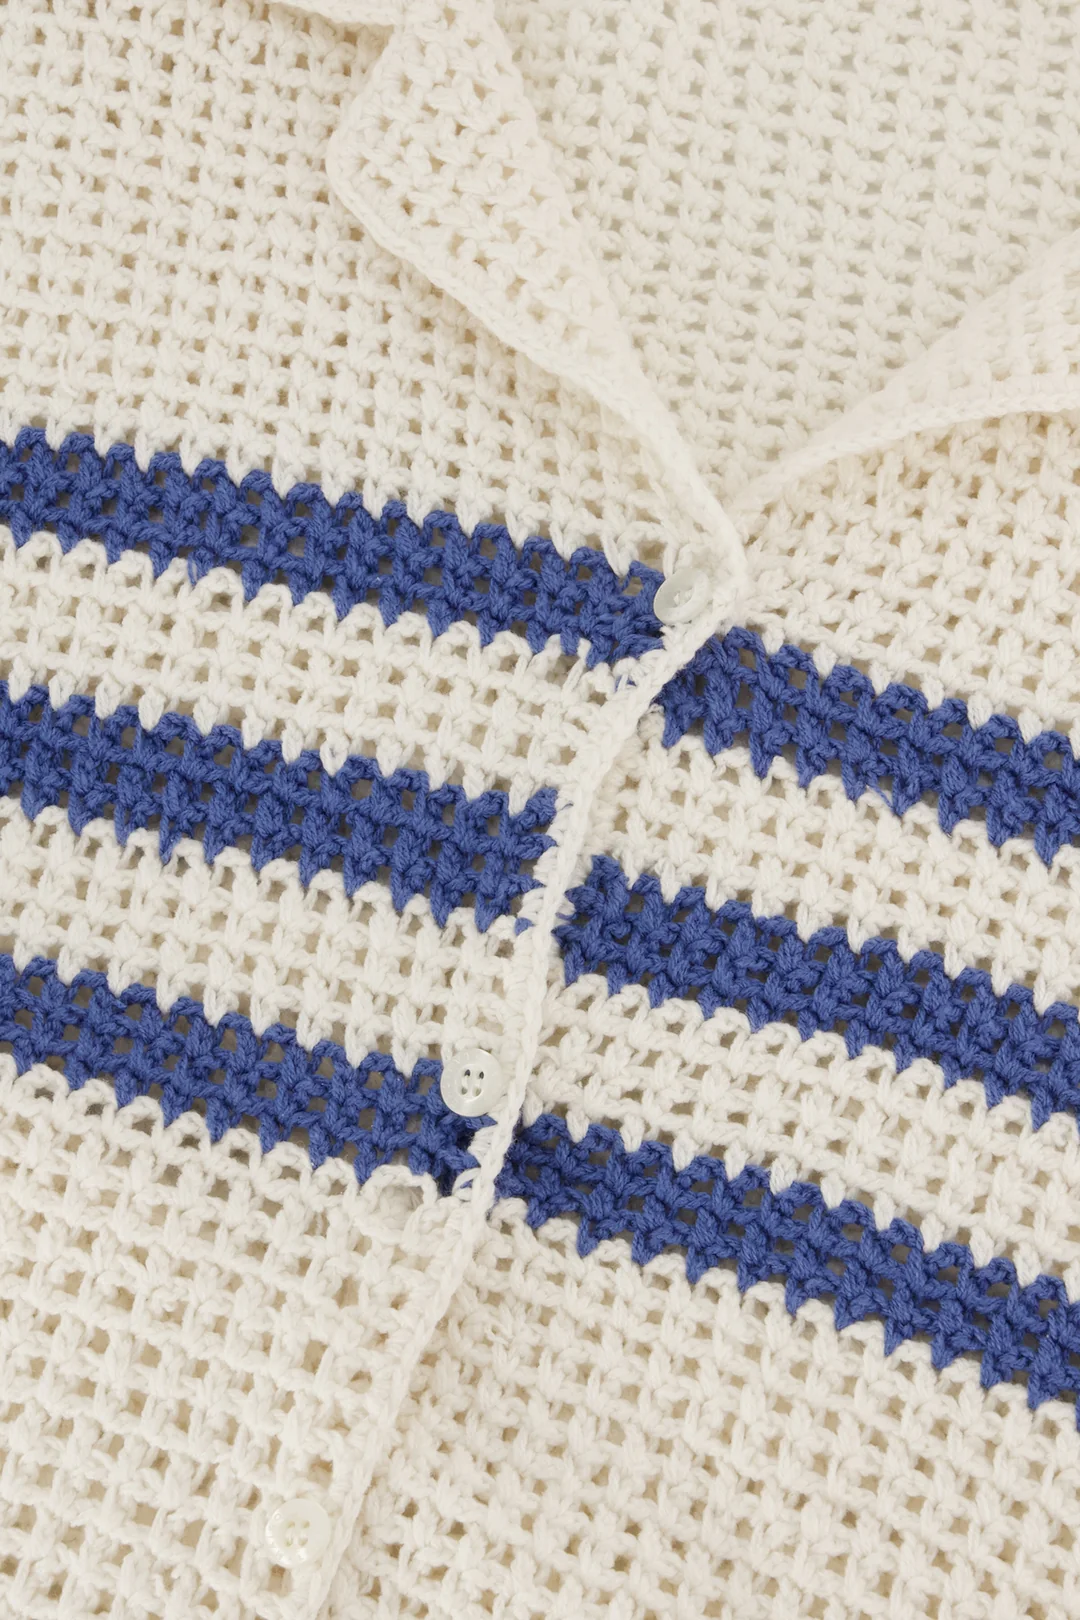 Maison Labiche - Crochète Beuret Shirt, Cream Azur